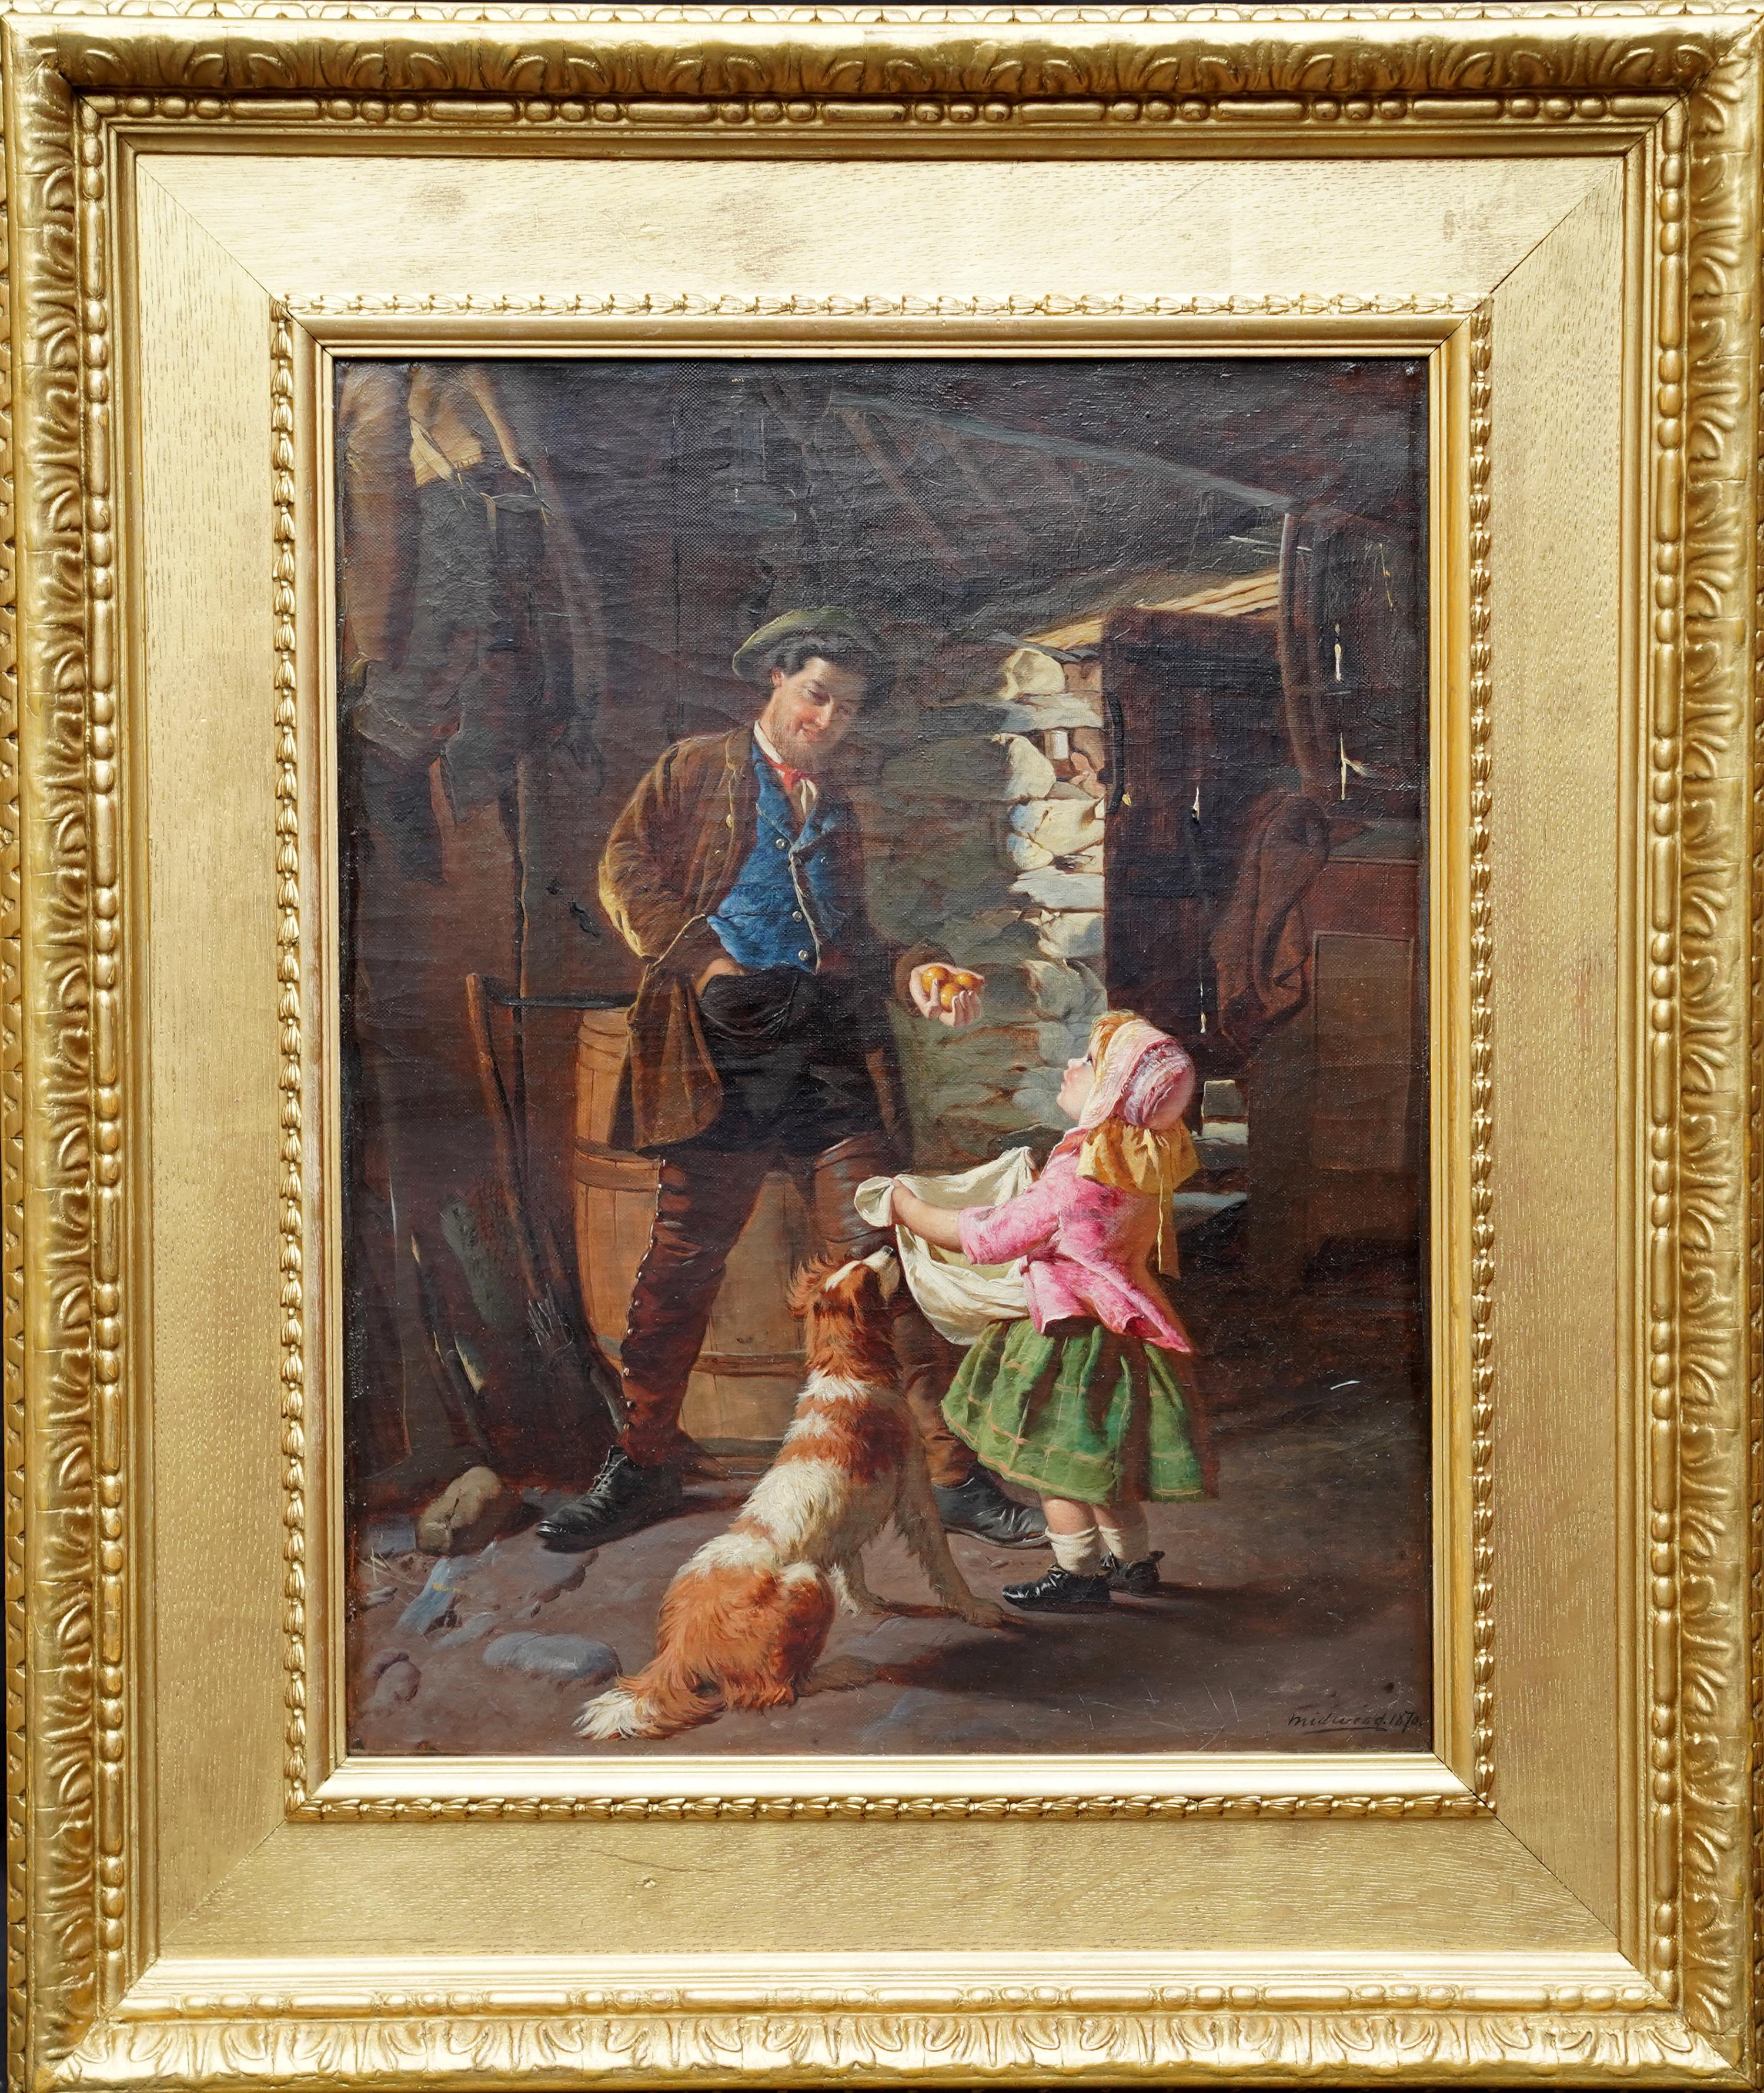 Animal Painting William Henry Midwood - Portrait d'une fille de fermier et d'un chien - peinture à l'huile de genre britannique du 19e siècle